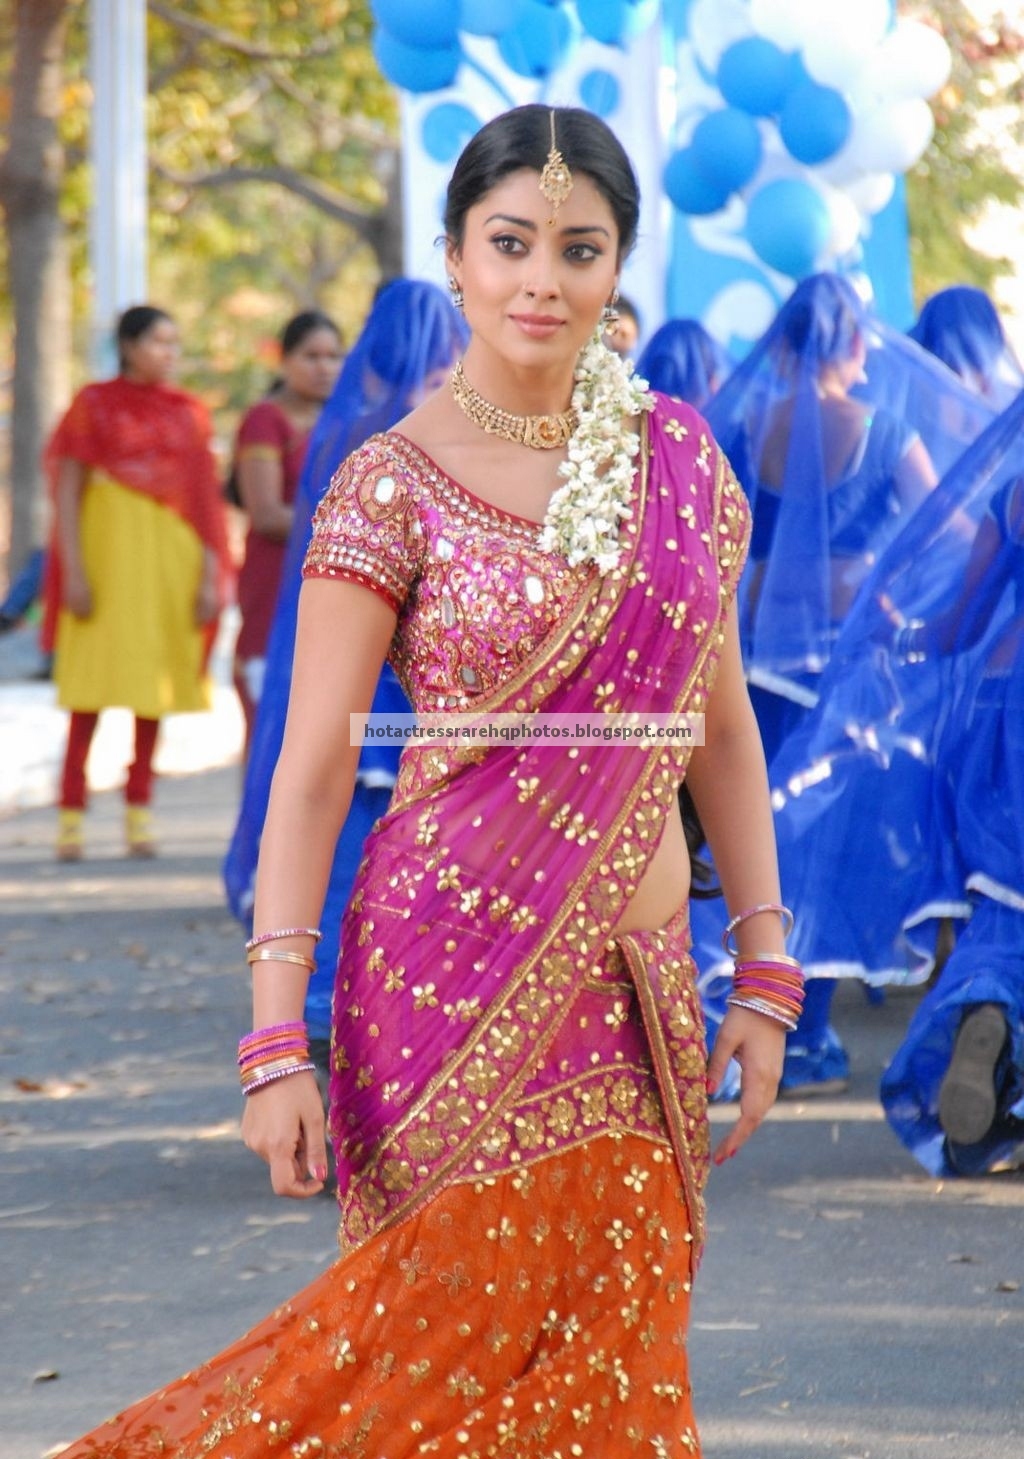 Hot Indian Actress Rare HQ Photos: Ravishing Indian Beauty ...